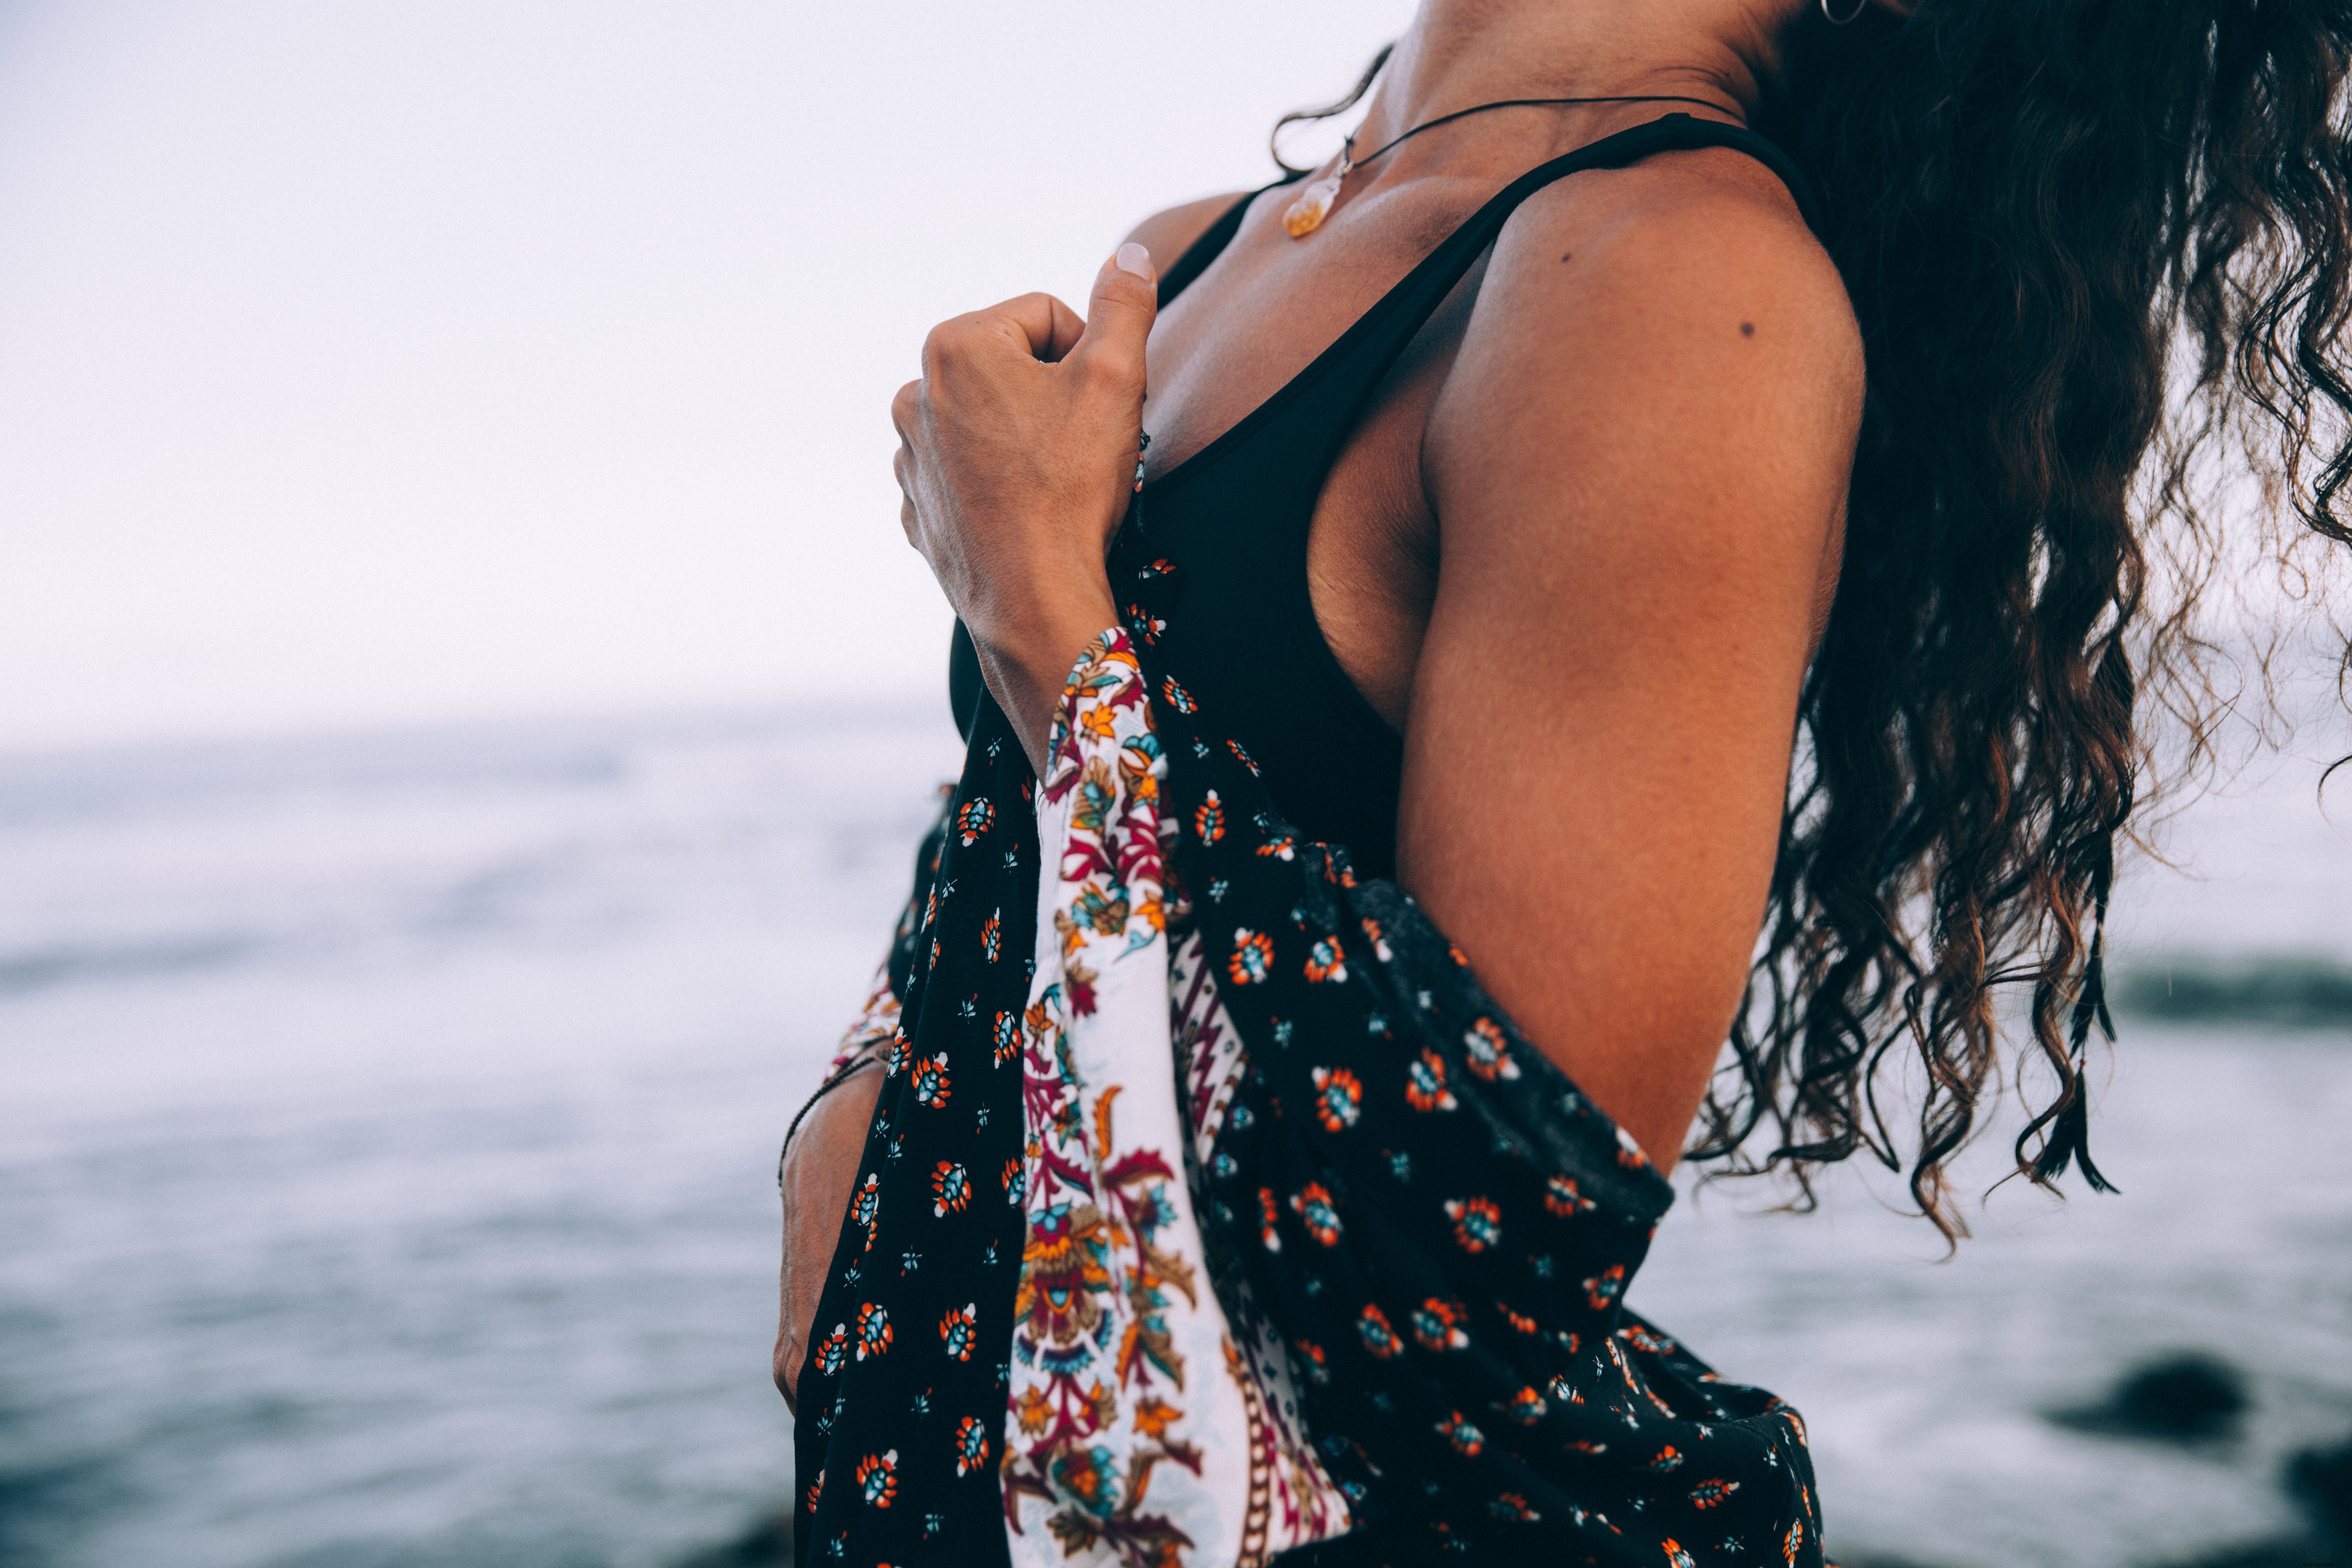 Une femme avec une robe à motifs jette la tête en arrière par une photo de plage